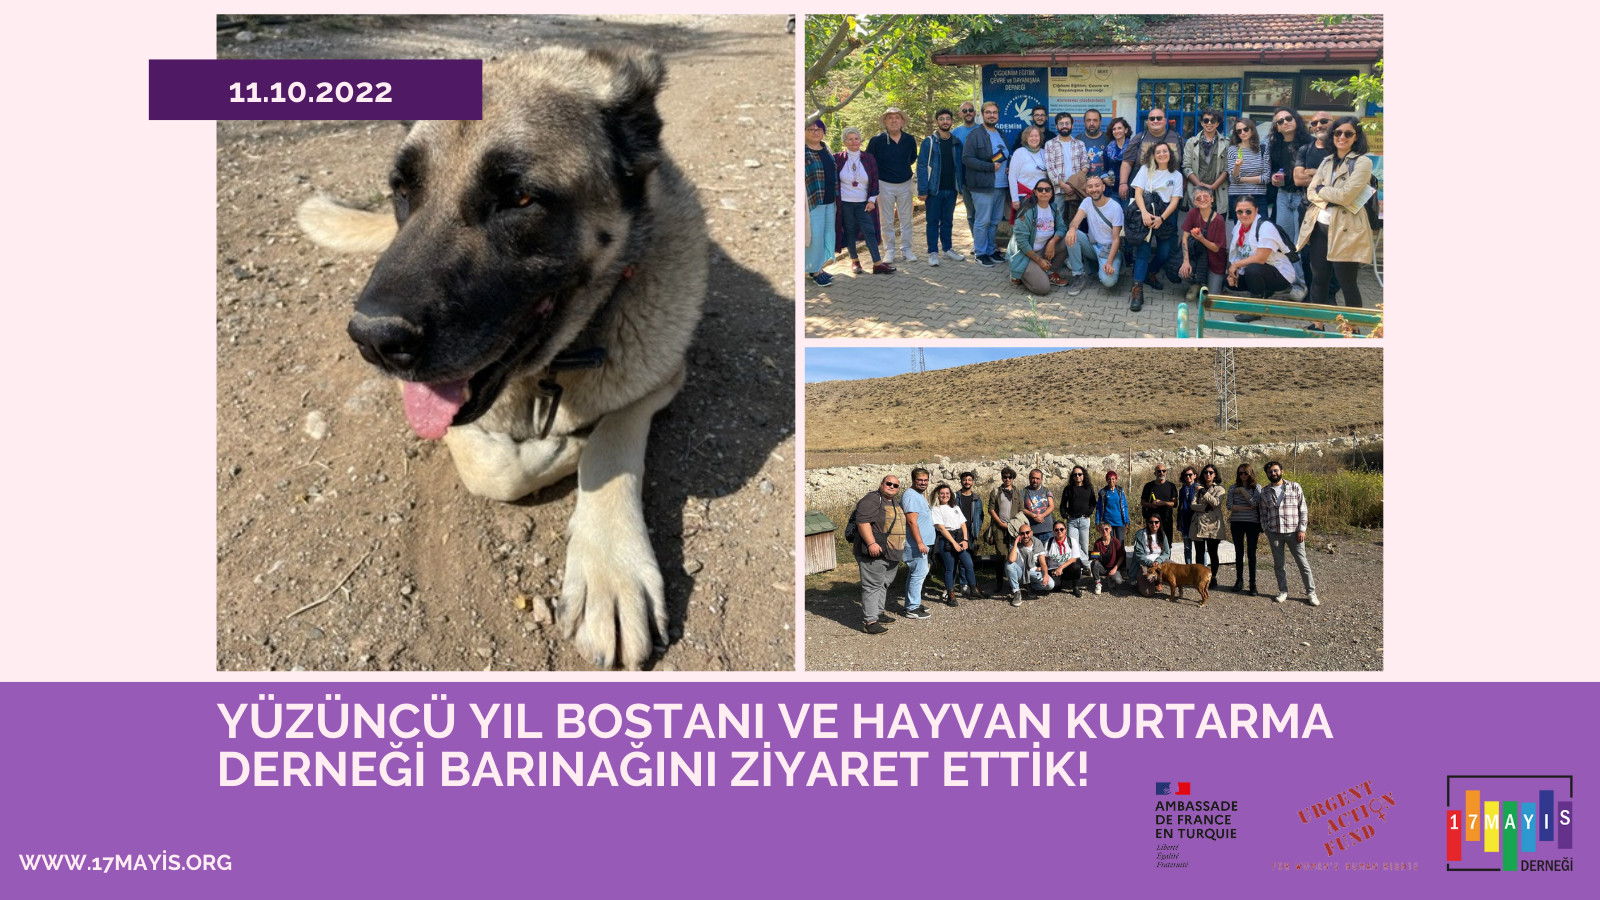 Yüzüncü Yıl Bostanı ve Hayvan Kurtarma Derneği Barınağını Ziyaret Ettik! - 17 Mayıs